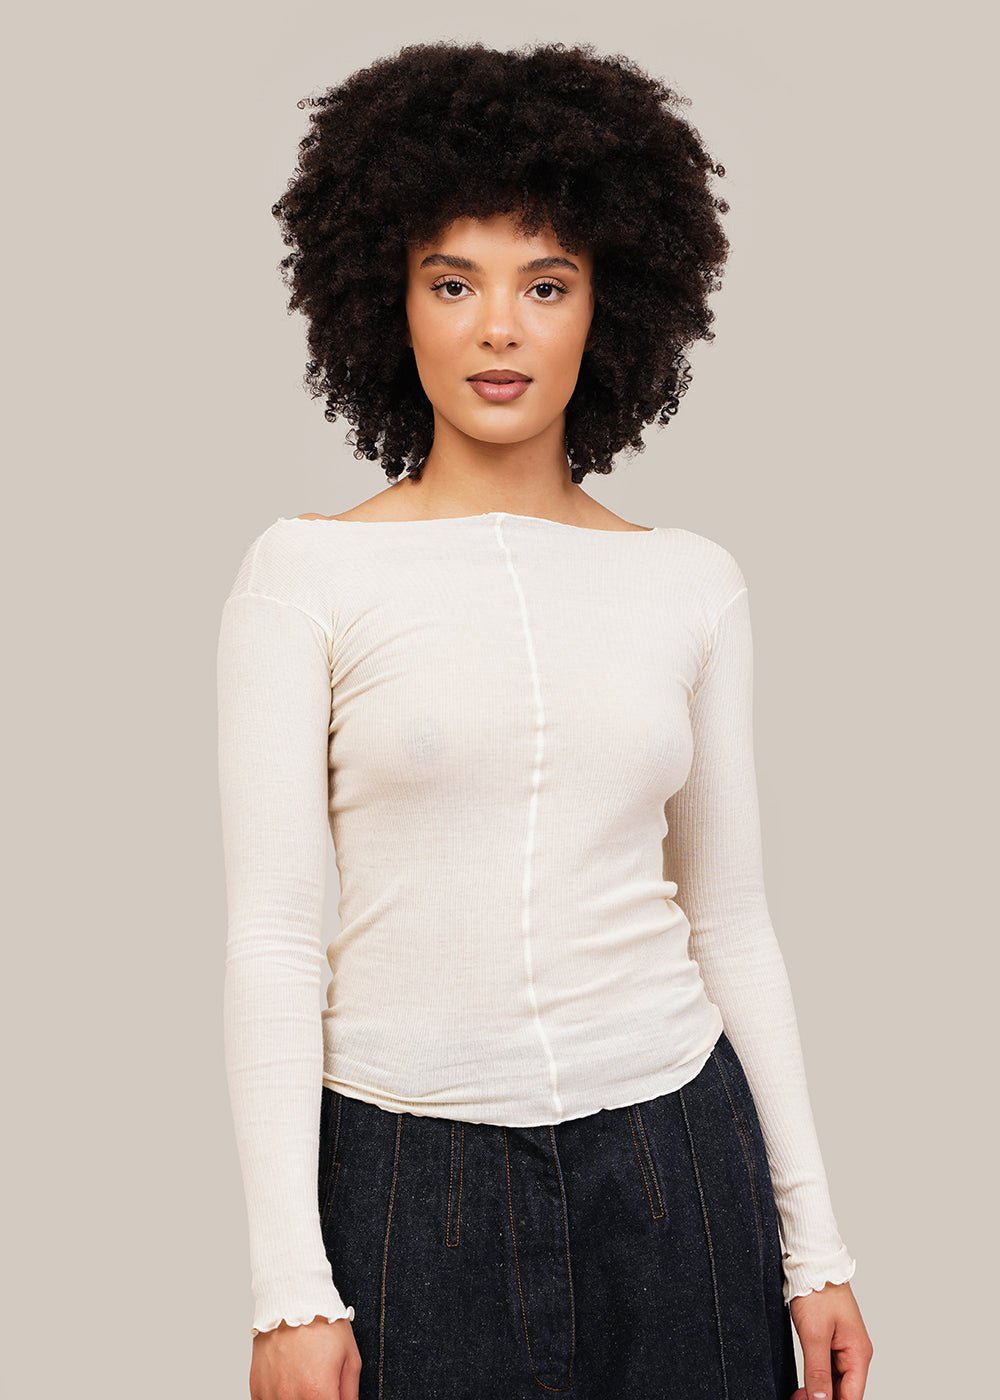 Baserange Off-White Pama Long-Sleeve Shirt - New Classics Studios Sustainable Ethical Fashion Canada